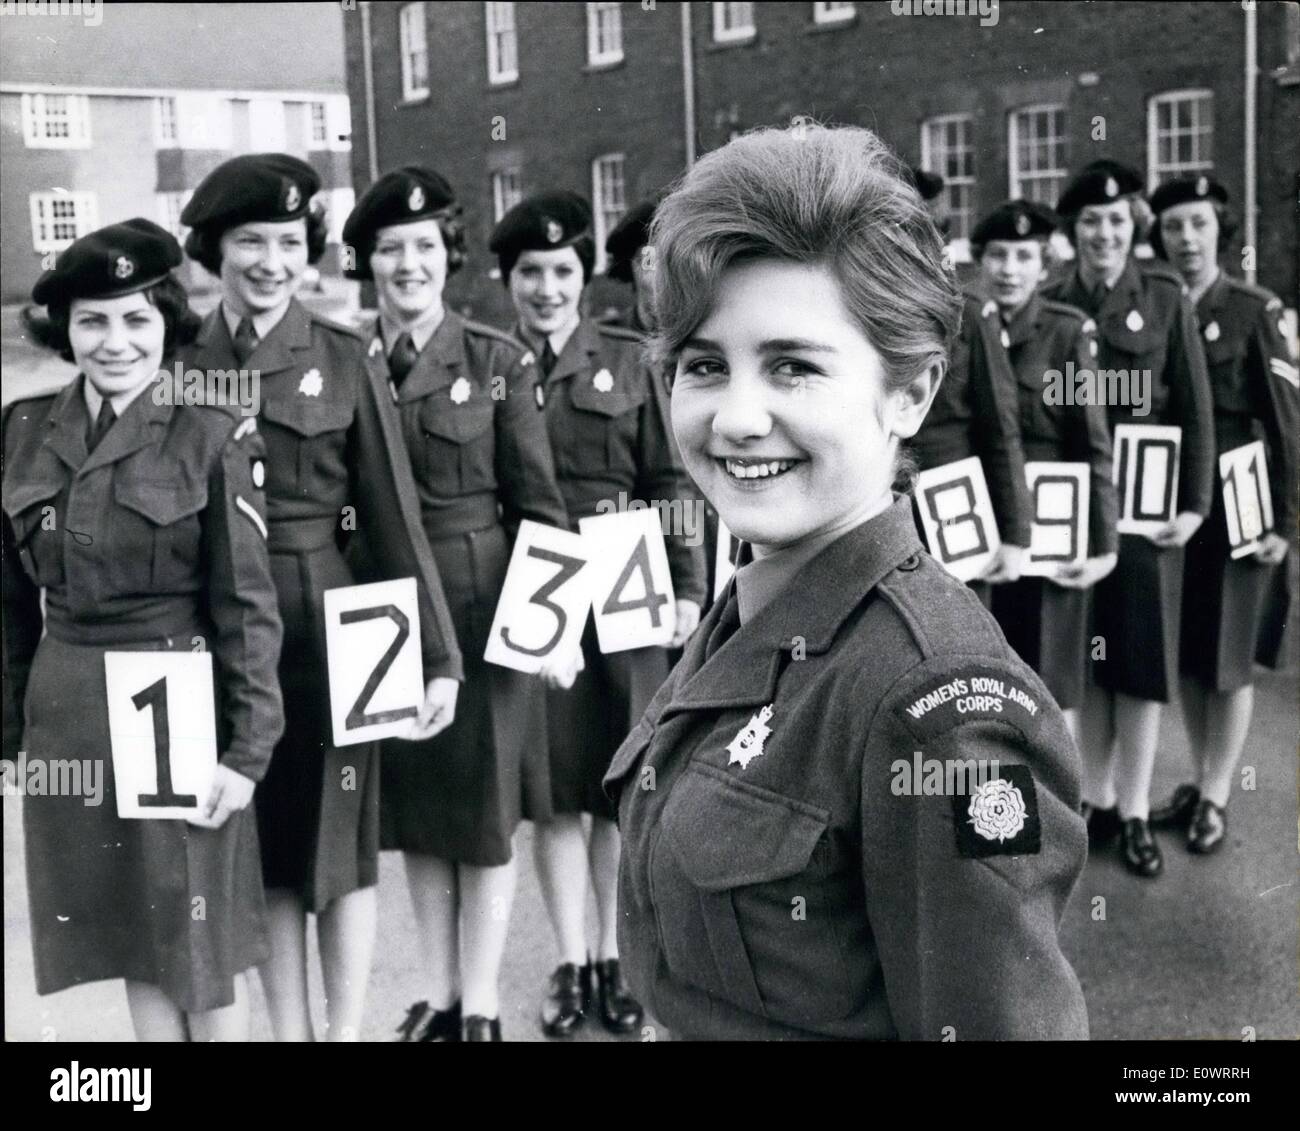 10 févr. 02, 1964 - La ''Pin'''. 17-year-old 417988 Shephard privé M. de la Women's Royal Army Corps a reçu une promotion unique, elle est devenue ''Army Mules fille no1'' deux, quand elle a gagné un concours de beauté de l'armée de 10 autres prétendants qui a été sélectionnée comme la plus jolie fille de soldats dans le Yorkshire. Le concours était organisé par l'W.R.A.C. a vu après leur pin-up photos sur les murs d'une caserne pour hommes, ils ont décidé qu'il était temps de l'image de l'W.R.A Banque D'Images